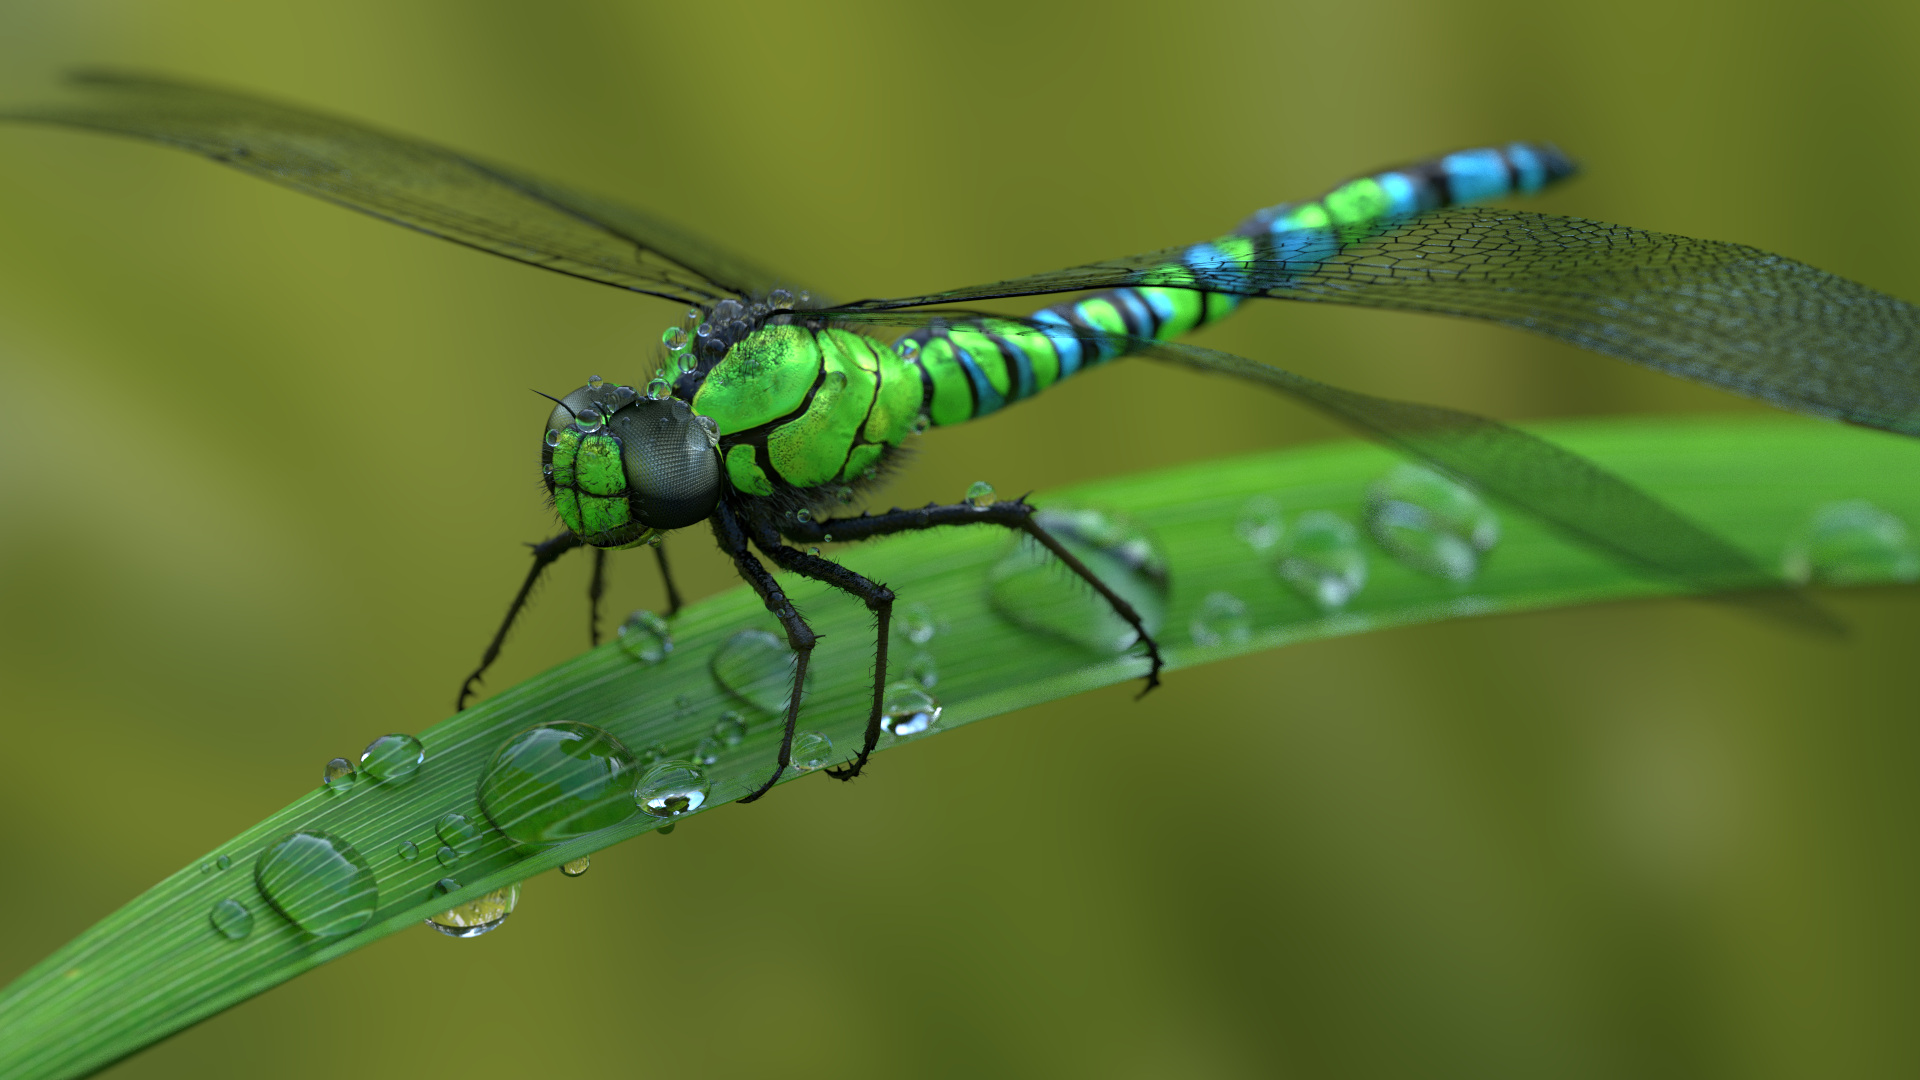 General 1920x1080 animals dragonflies macro water drops